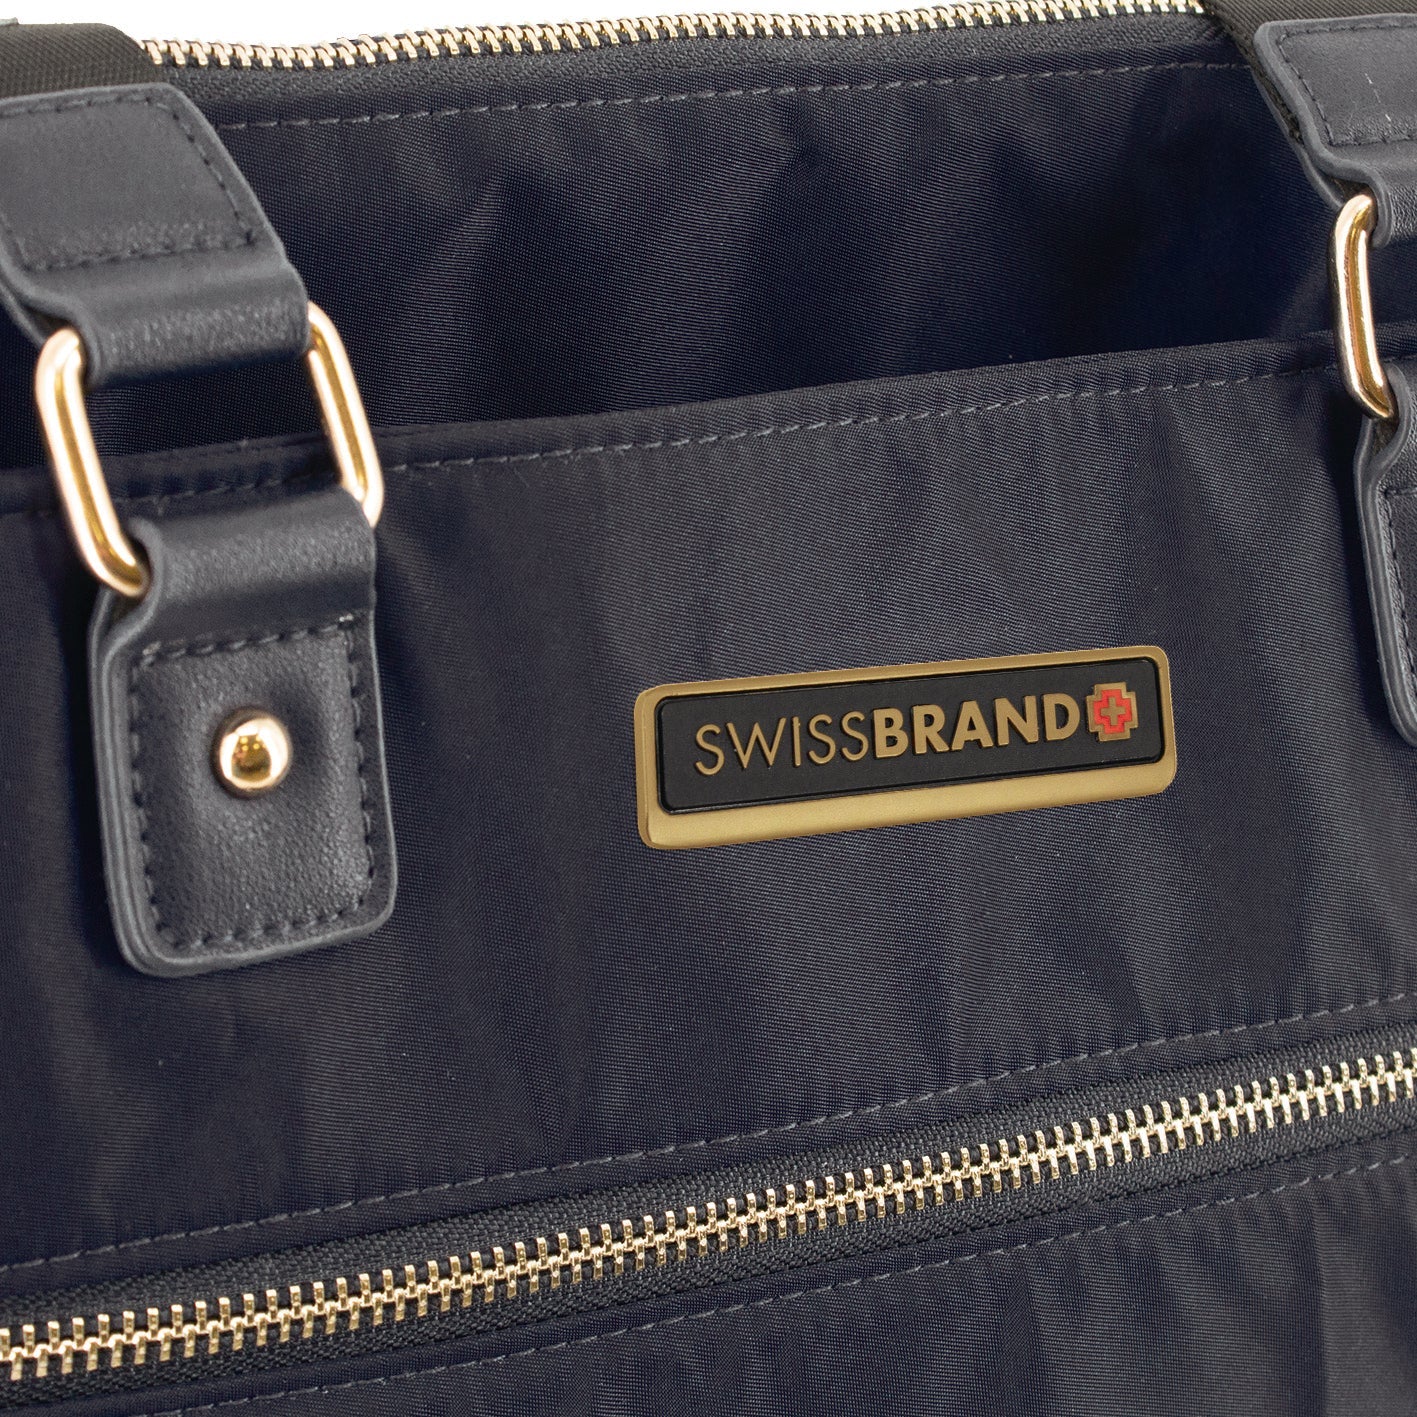 תיק יד אלגנטי הכולל רצועת הלבשה על מזוודת טרולי מבית המותג השוויצרי SwissBrand  דגם Granada Handbag